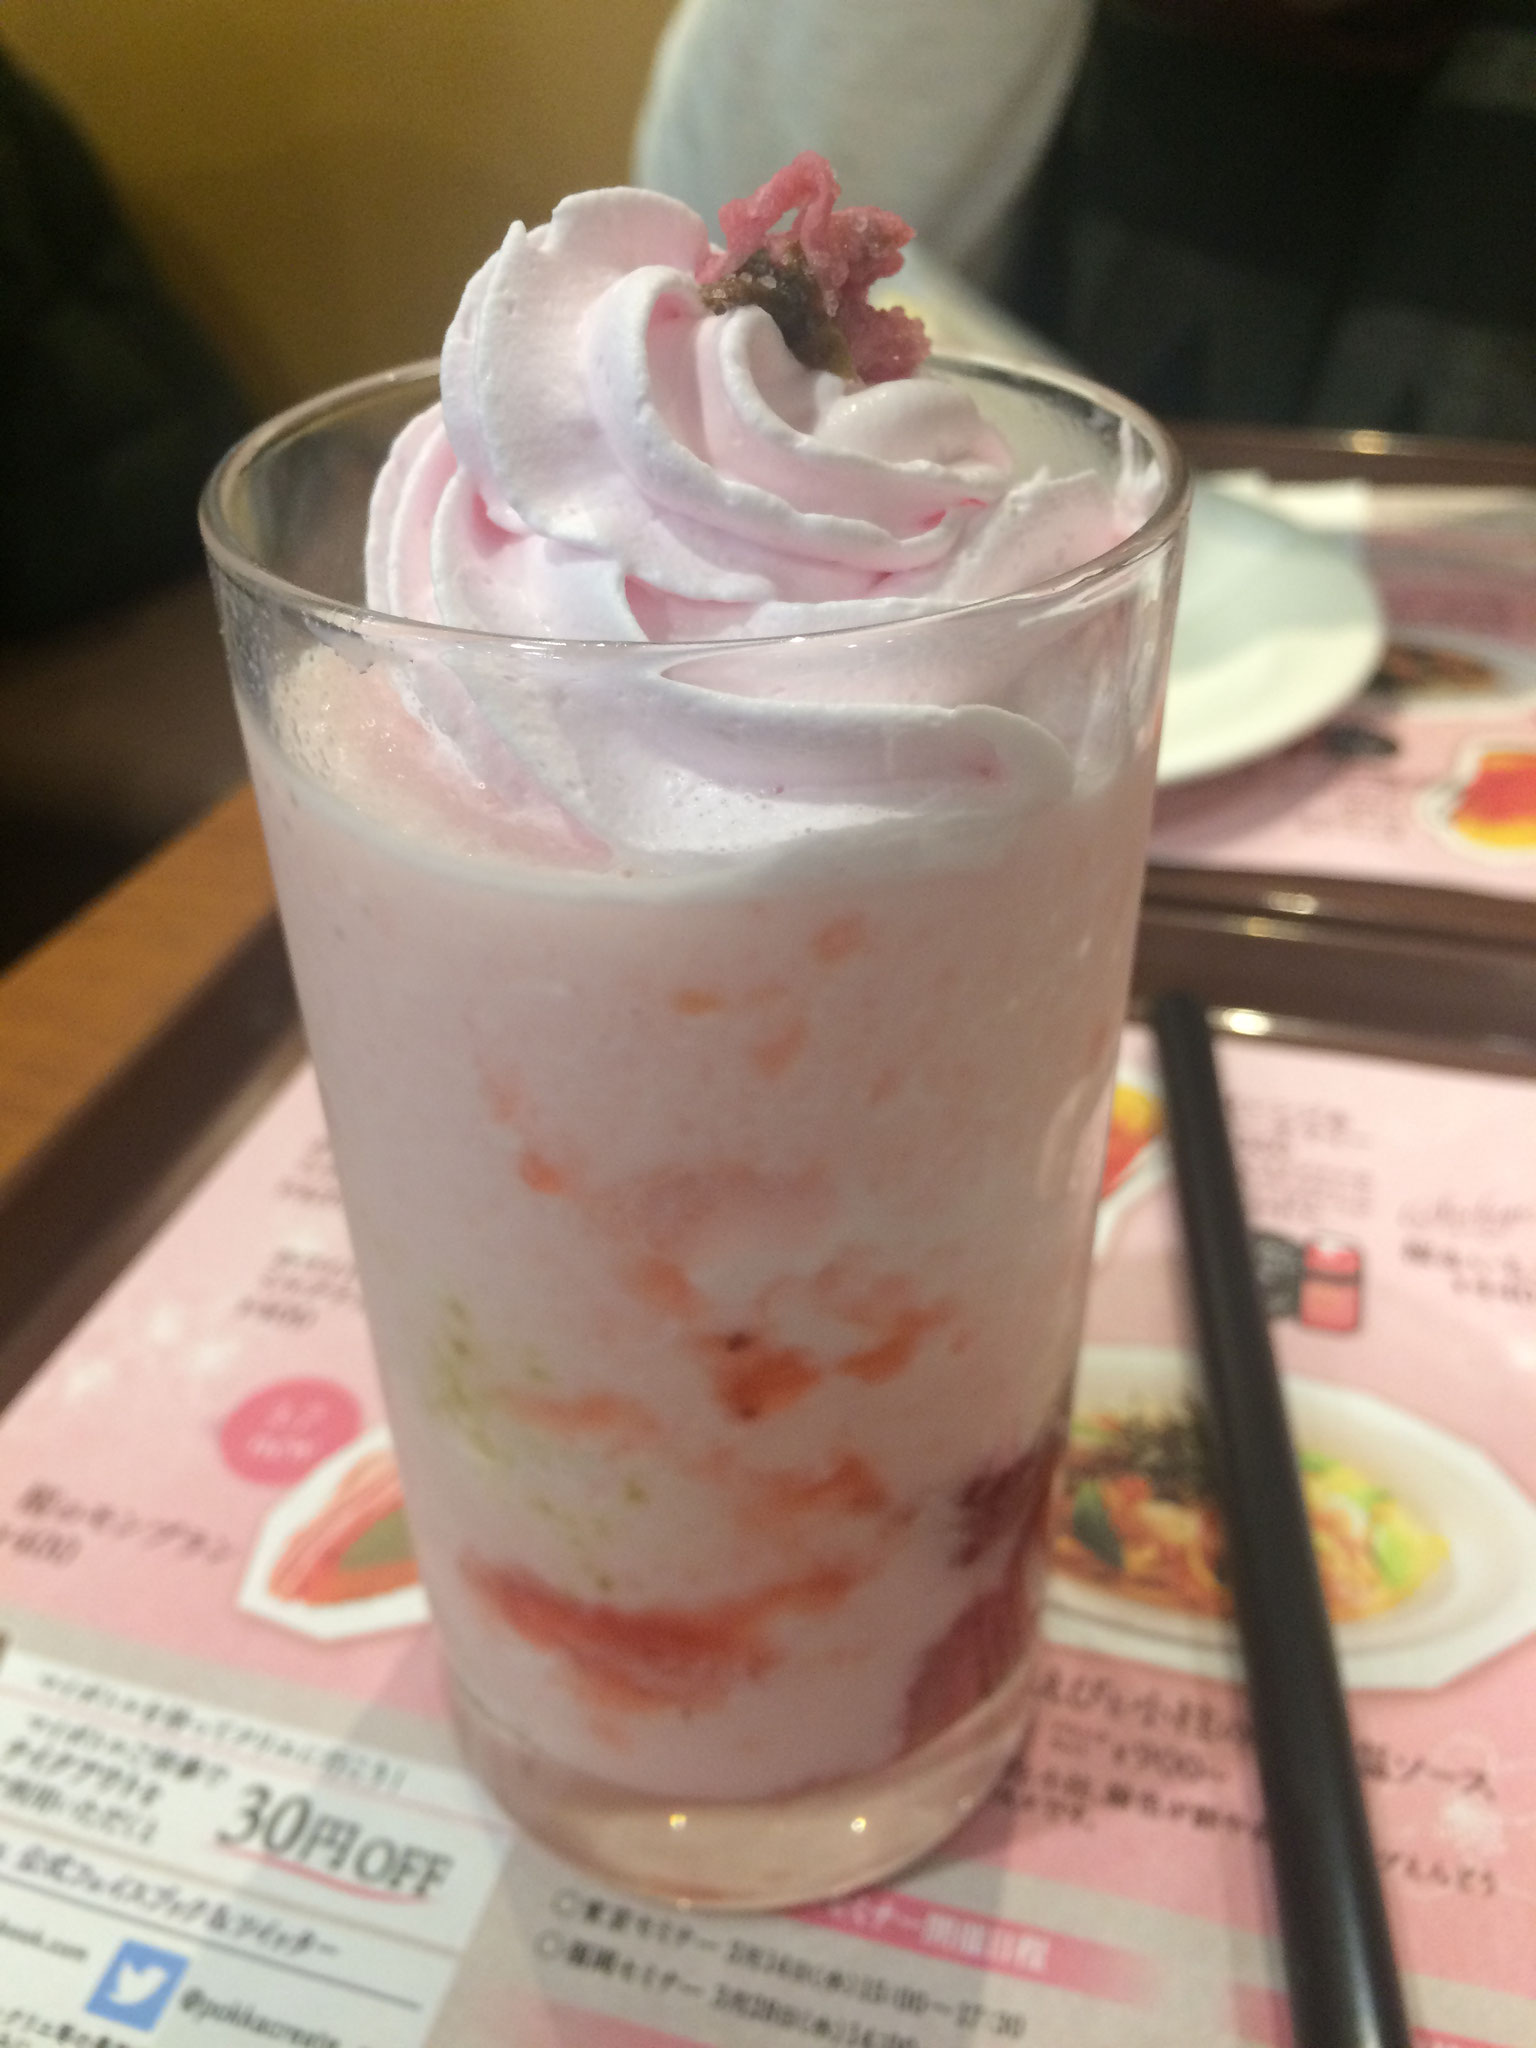 Getränke mit Sakura (Kirschblüten) schmecken super - werde ich vermissen...